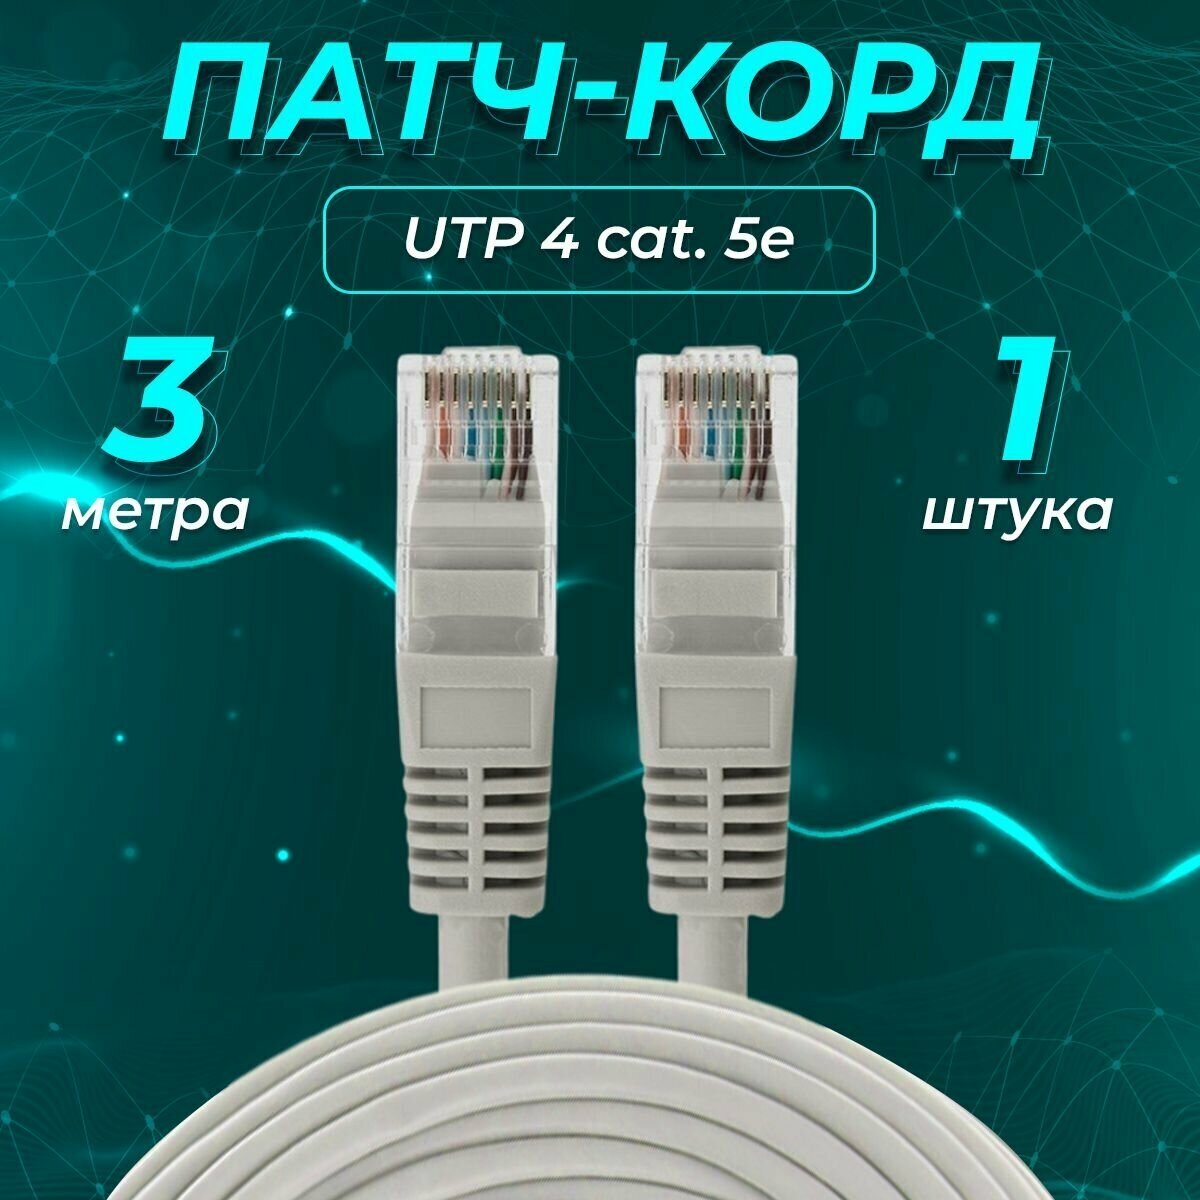 Патч-корд 3 метра, интернет кабель , RJ-45, категория 5e, UTP, серый, REDMART